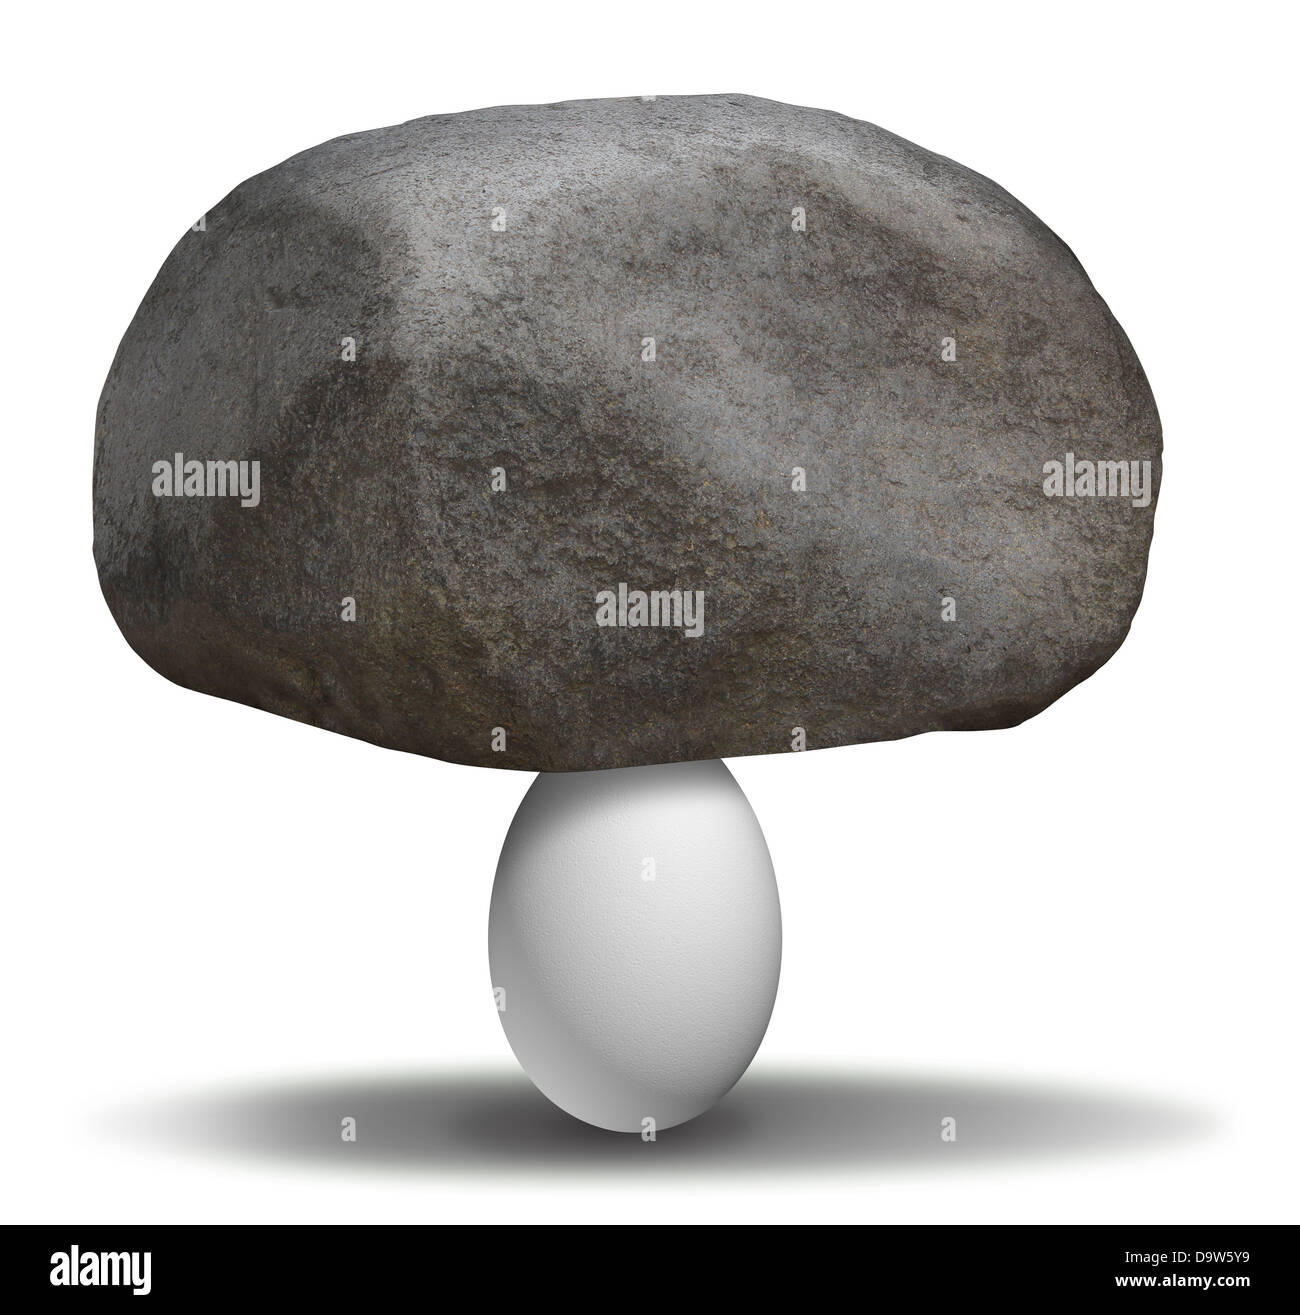 La extraordinaria fuerza con un rock pesado boulder encima de un frágil huevo blanco como un concepto de posibilidades y la creencia en la posibilidad de lograr lo imposible es posible. Foto de stock